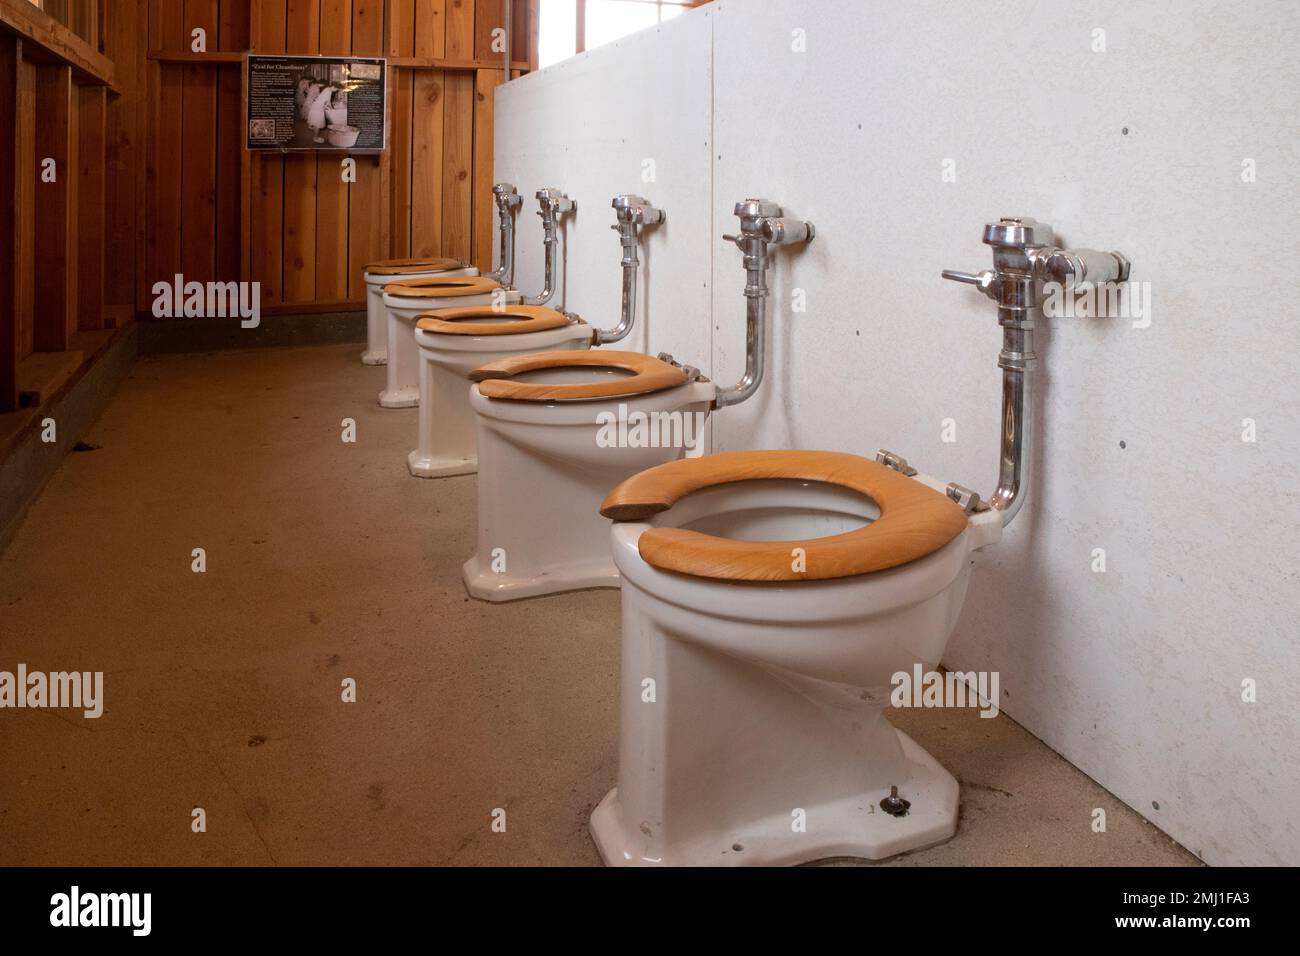 Exposition sur l'humiliation des toilettes et des douches publiques au site historique national de Manzanar, Owens Valley, Californie, États-Unis Banque D'Images